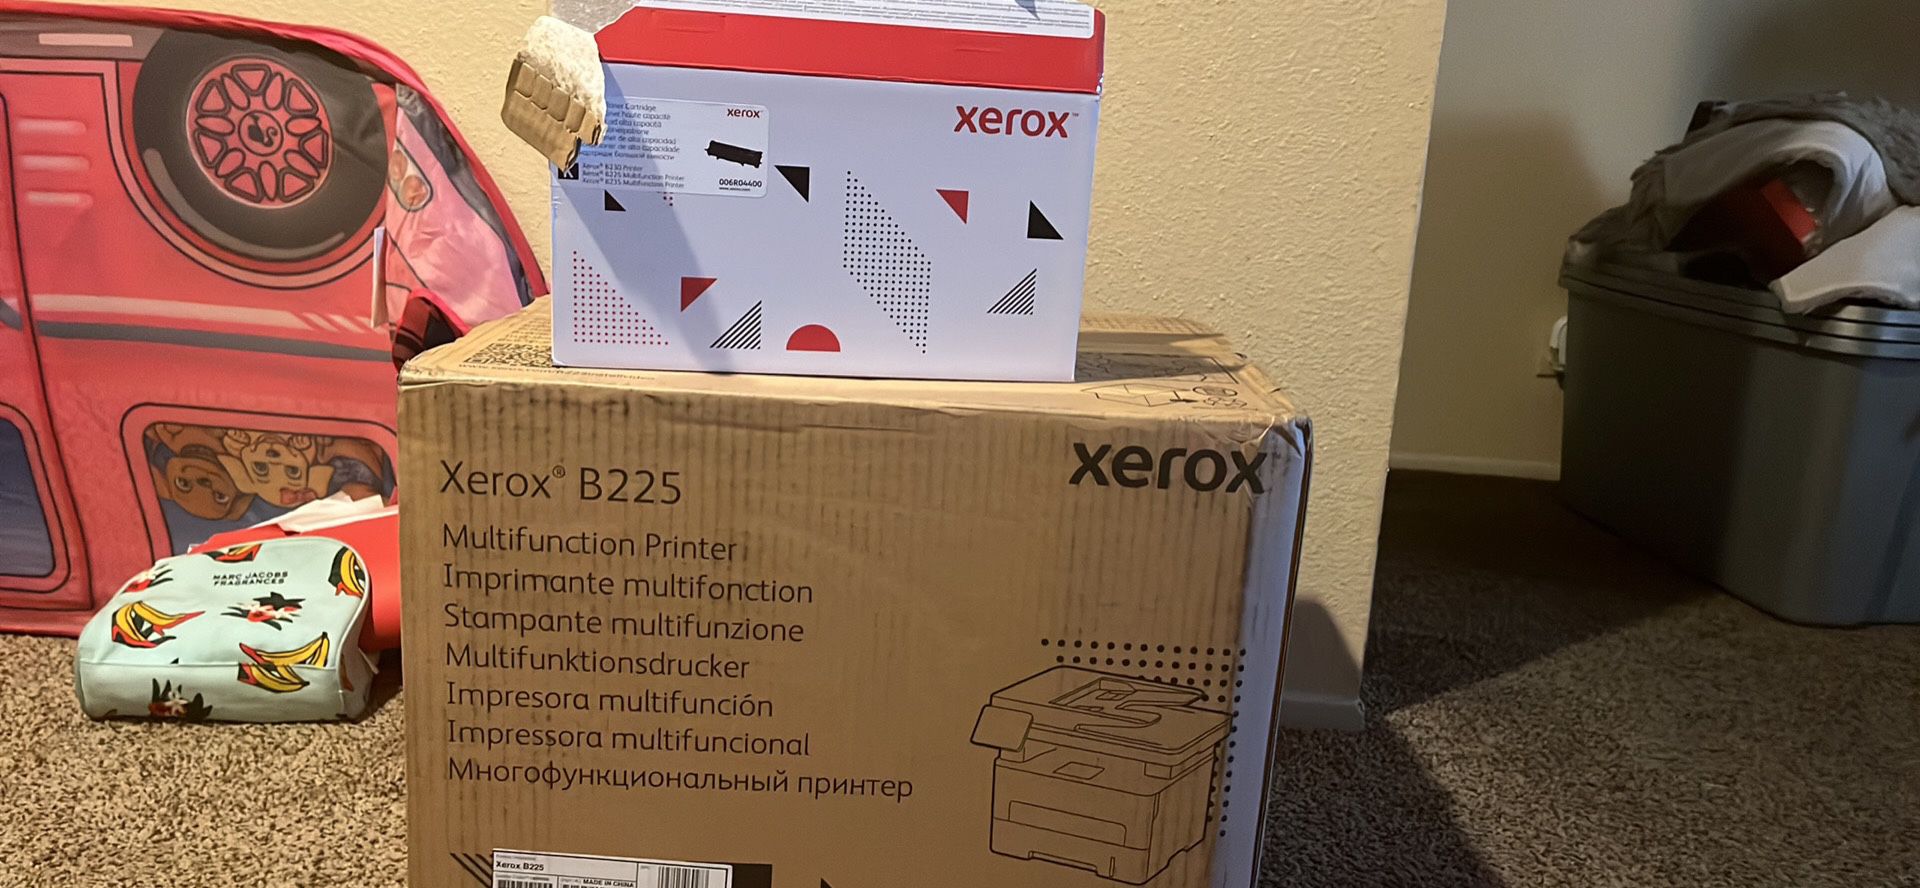 Xerox Printer And Toner 